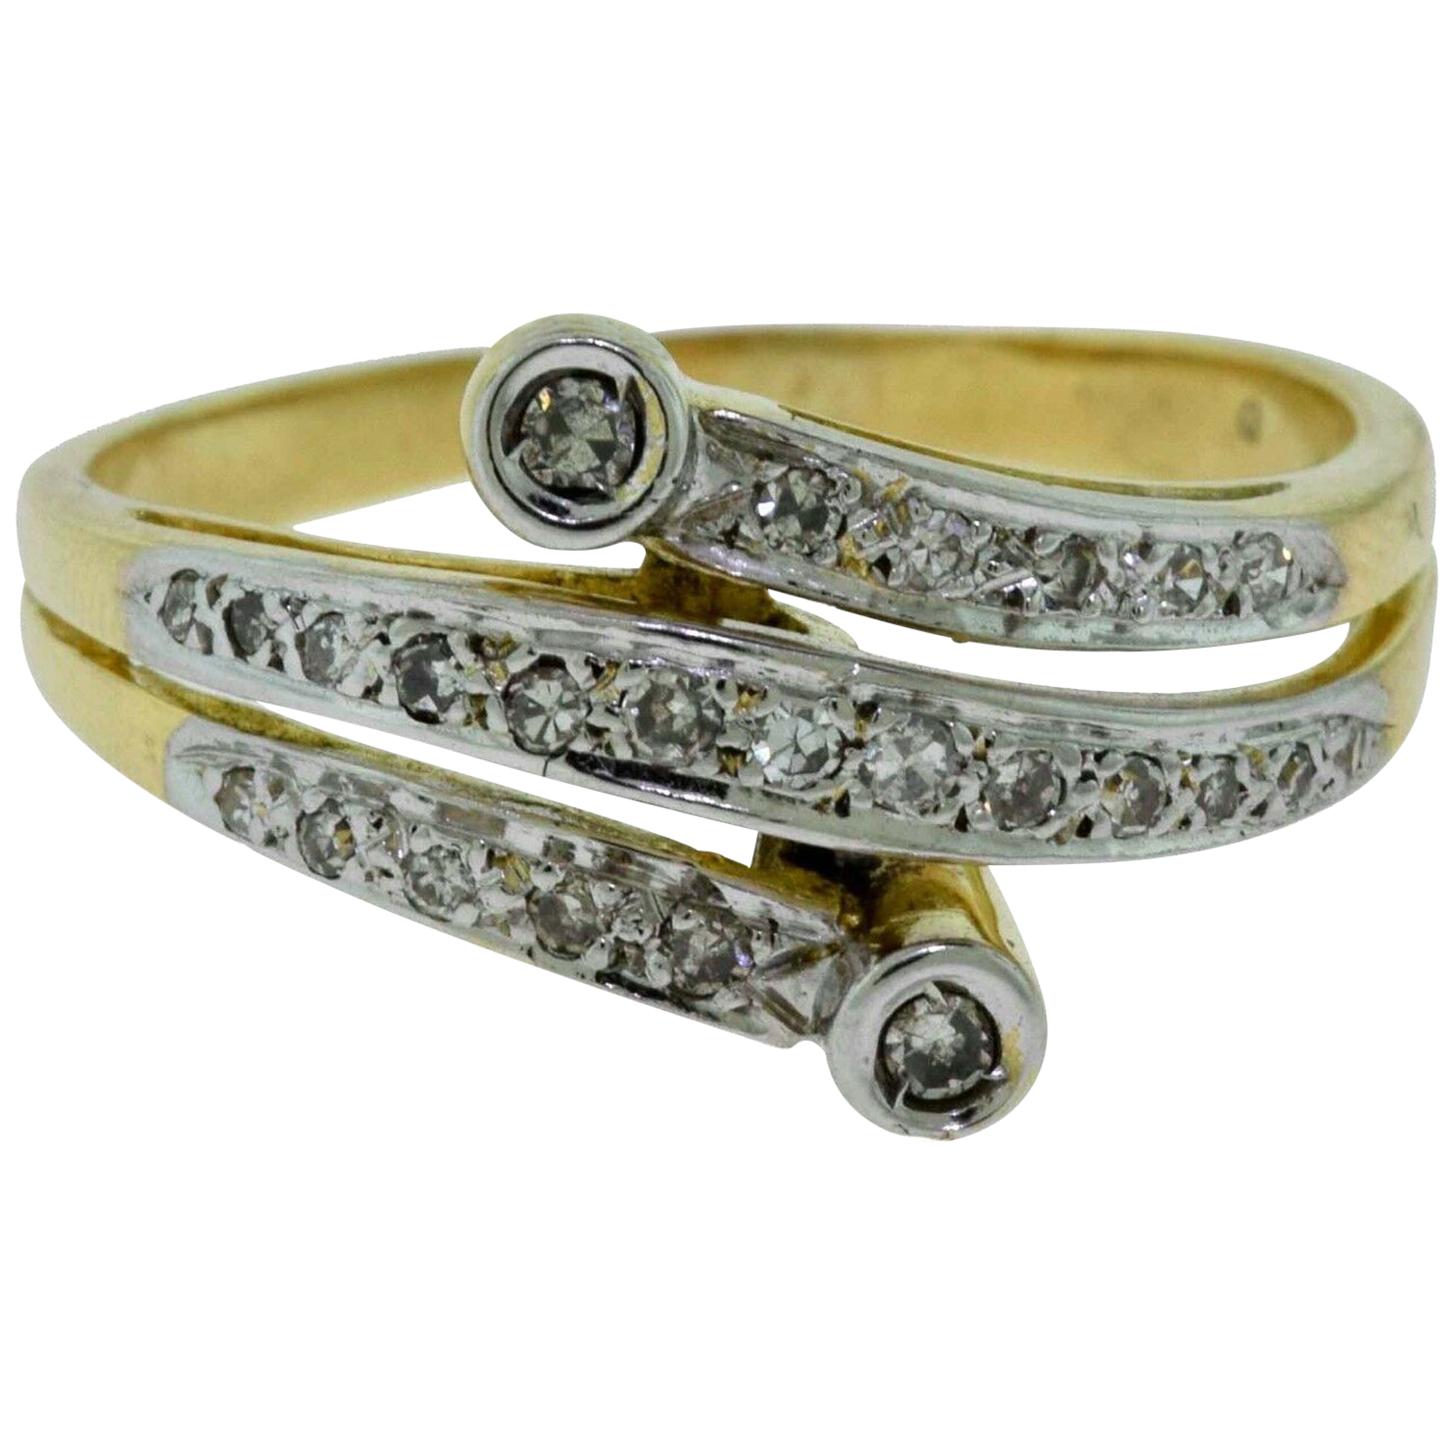 Yellow Gold Diamond Swirl Ring